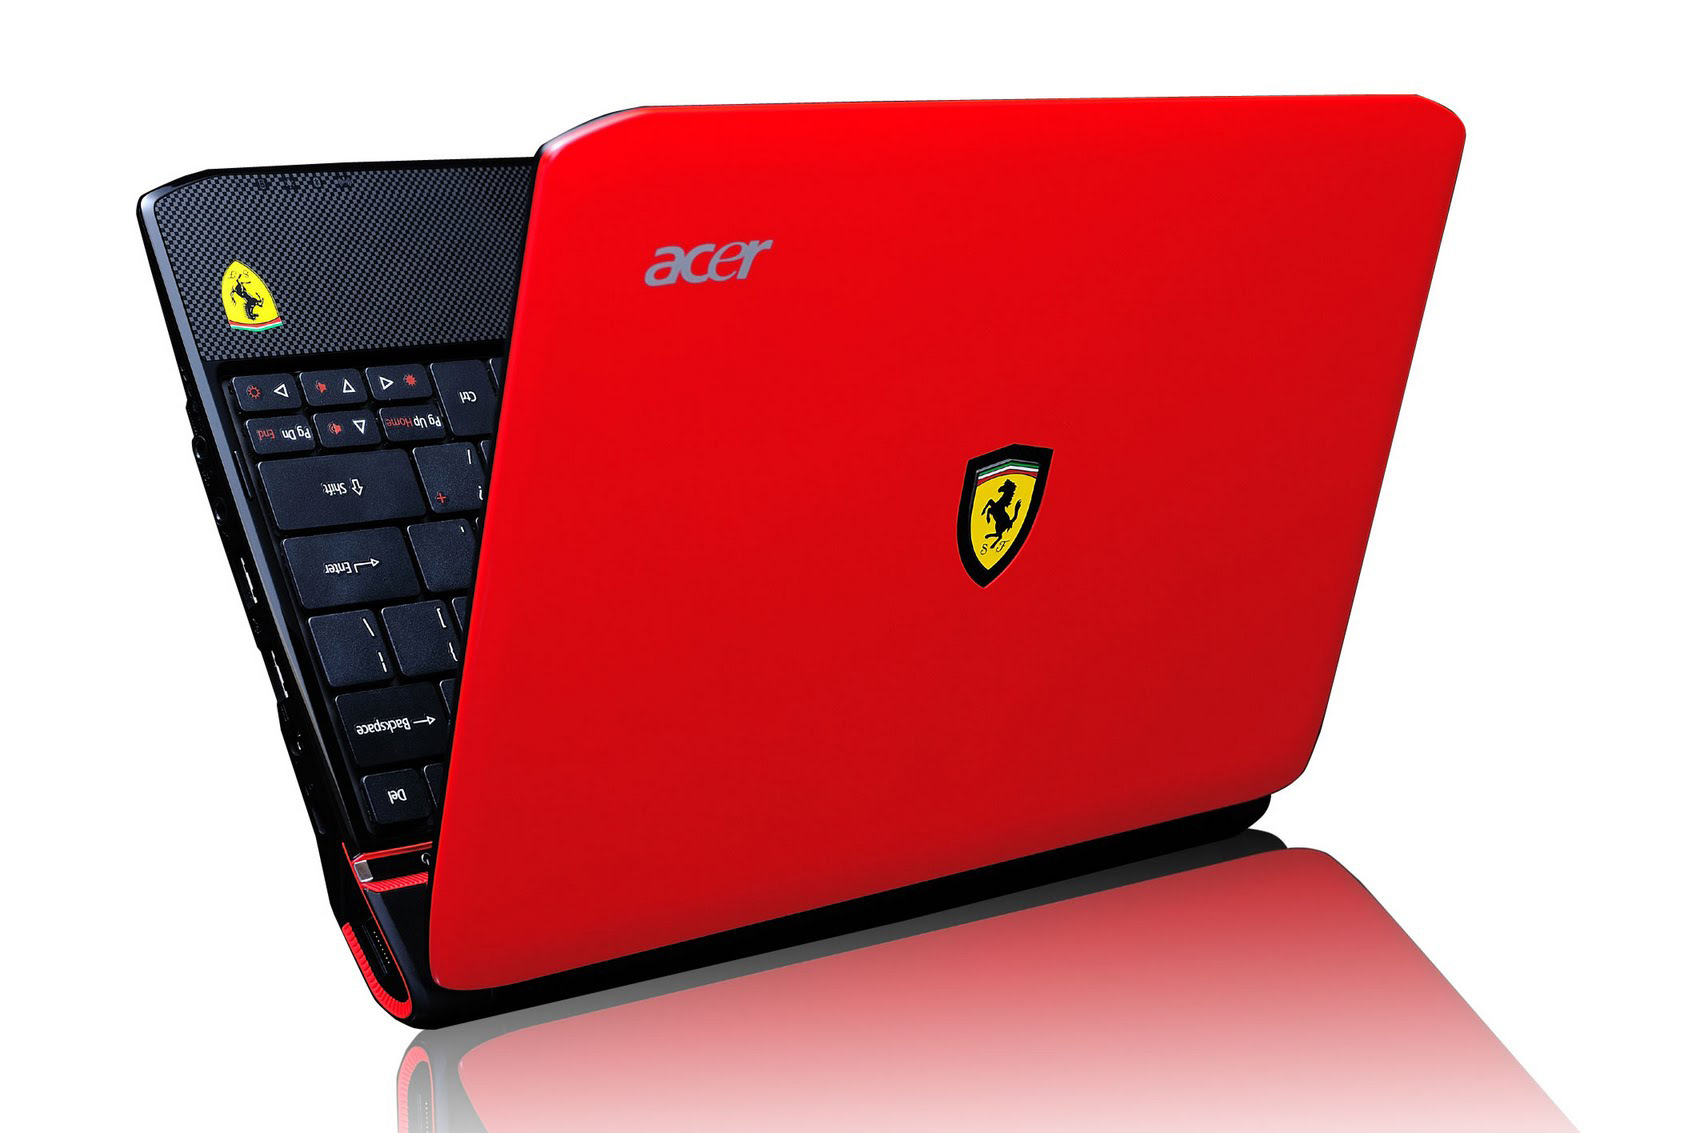 Acer ferrari. Ноутбук Acer Ferrari 3400. Ноутбук Феррари красный. Acer Ferrari 5005wlh. Асер Феррари оне 200 год выпуска.